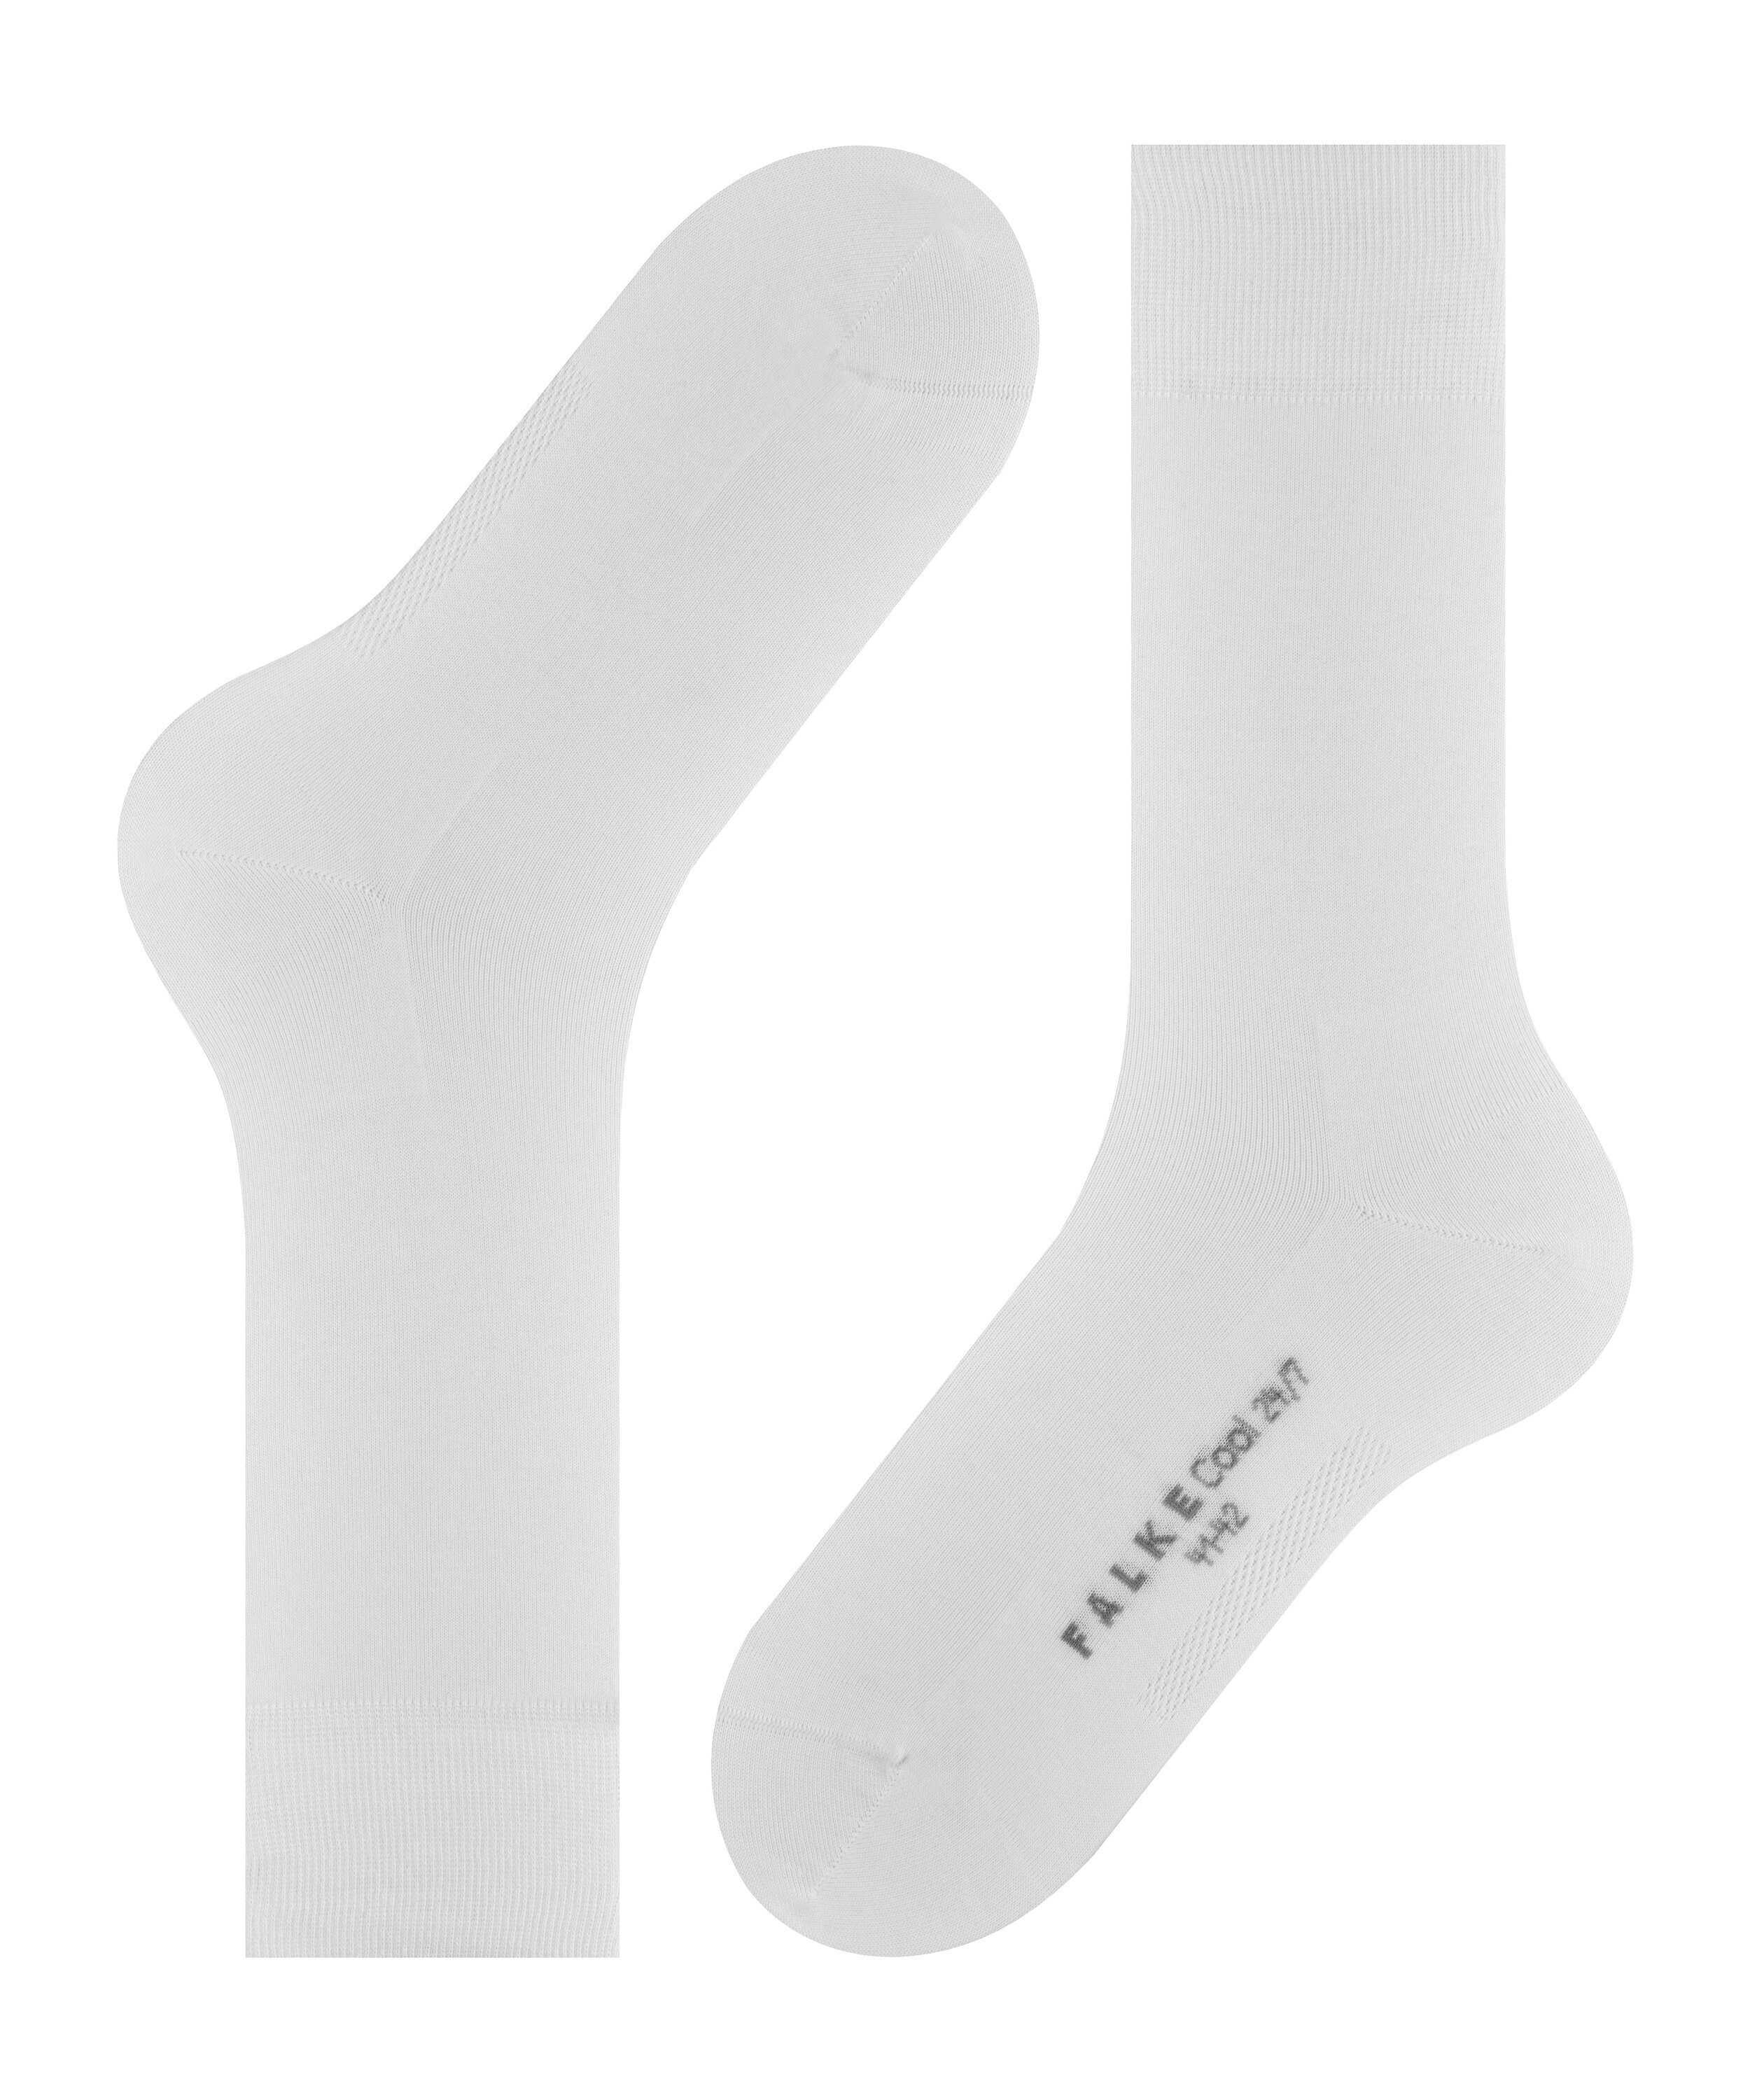 FALKE Socken white 24/7 Cool (2000) (1-Paar)